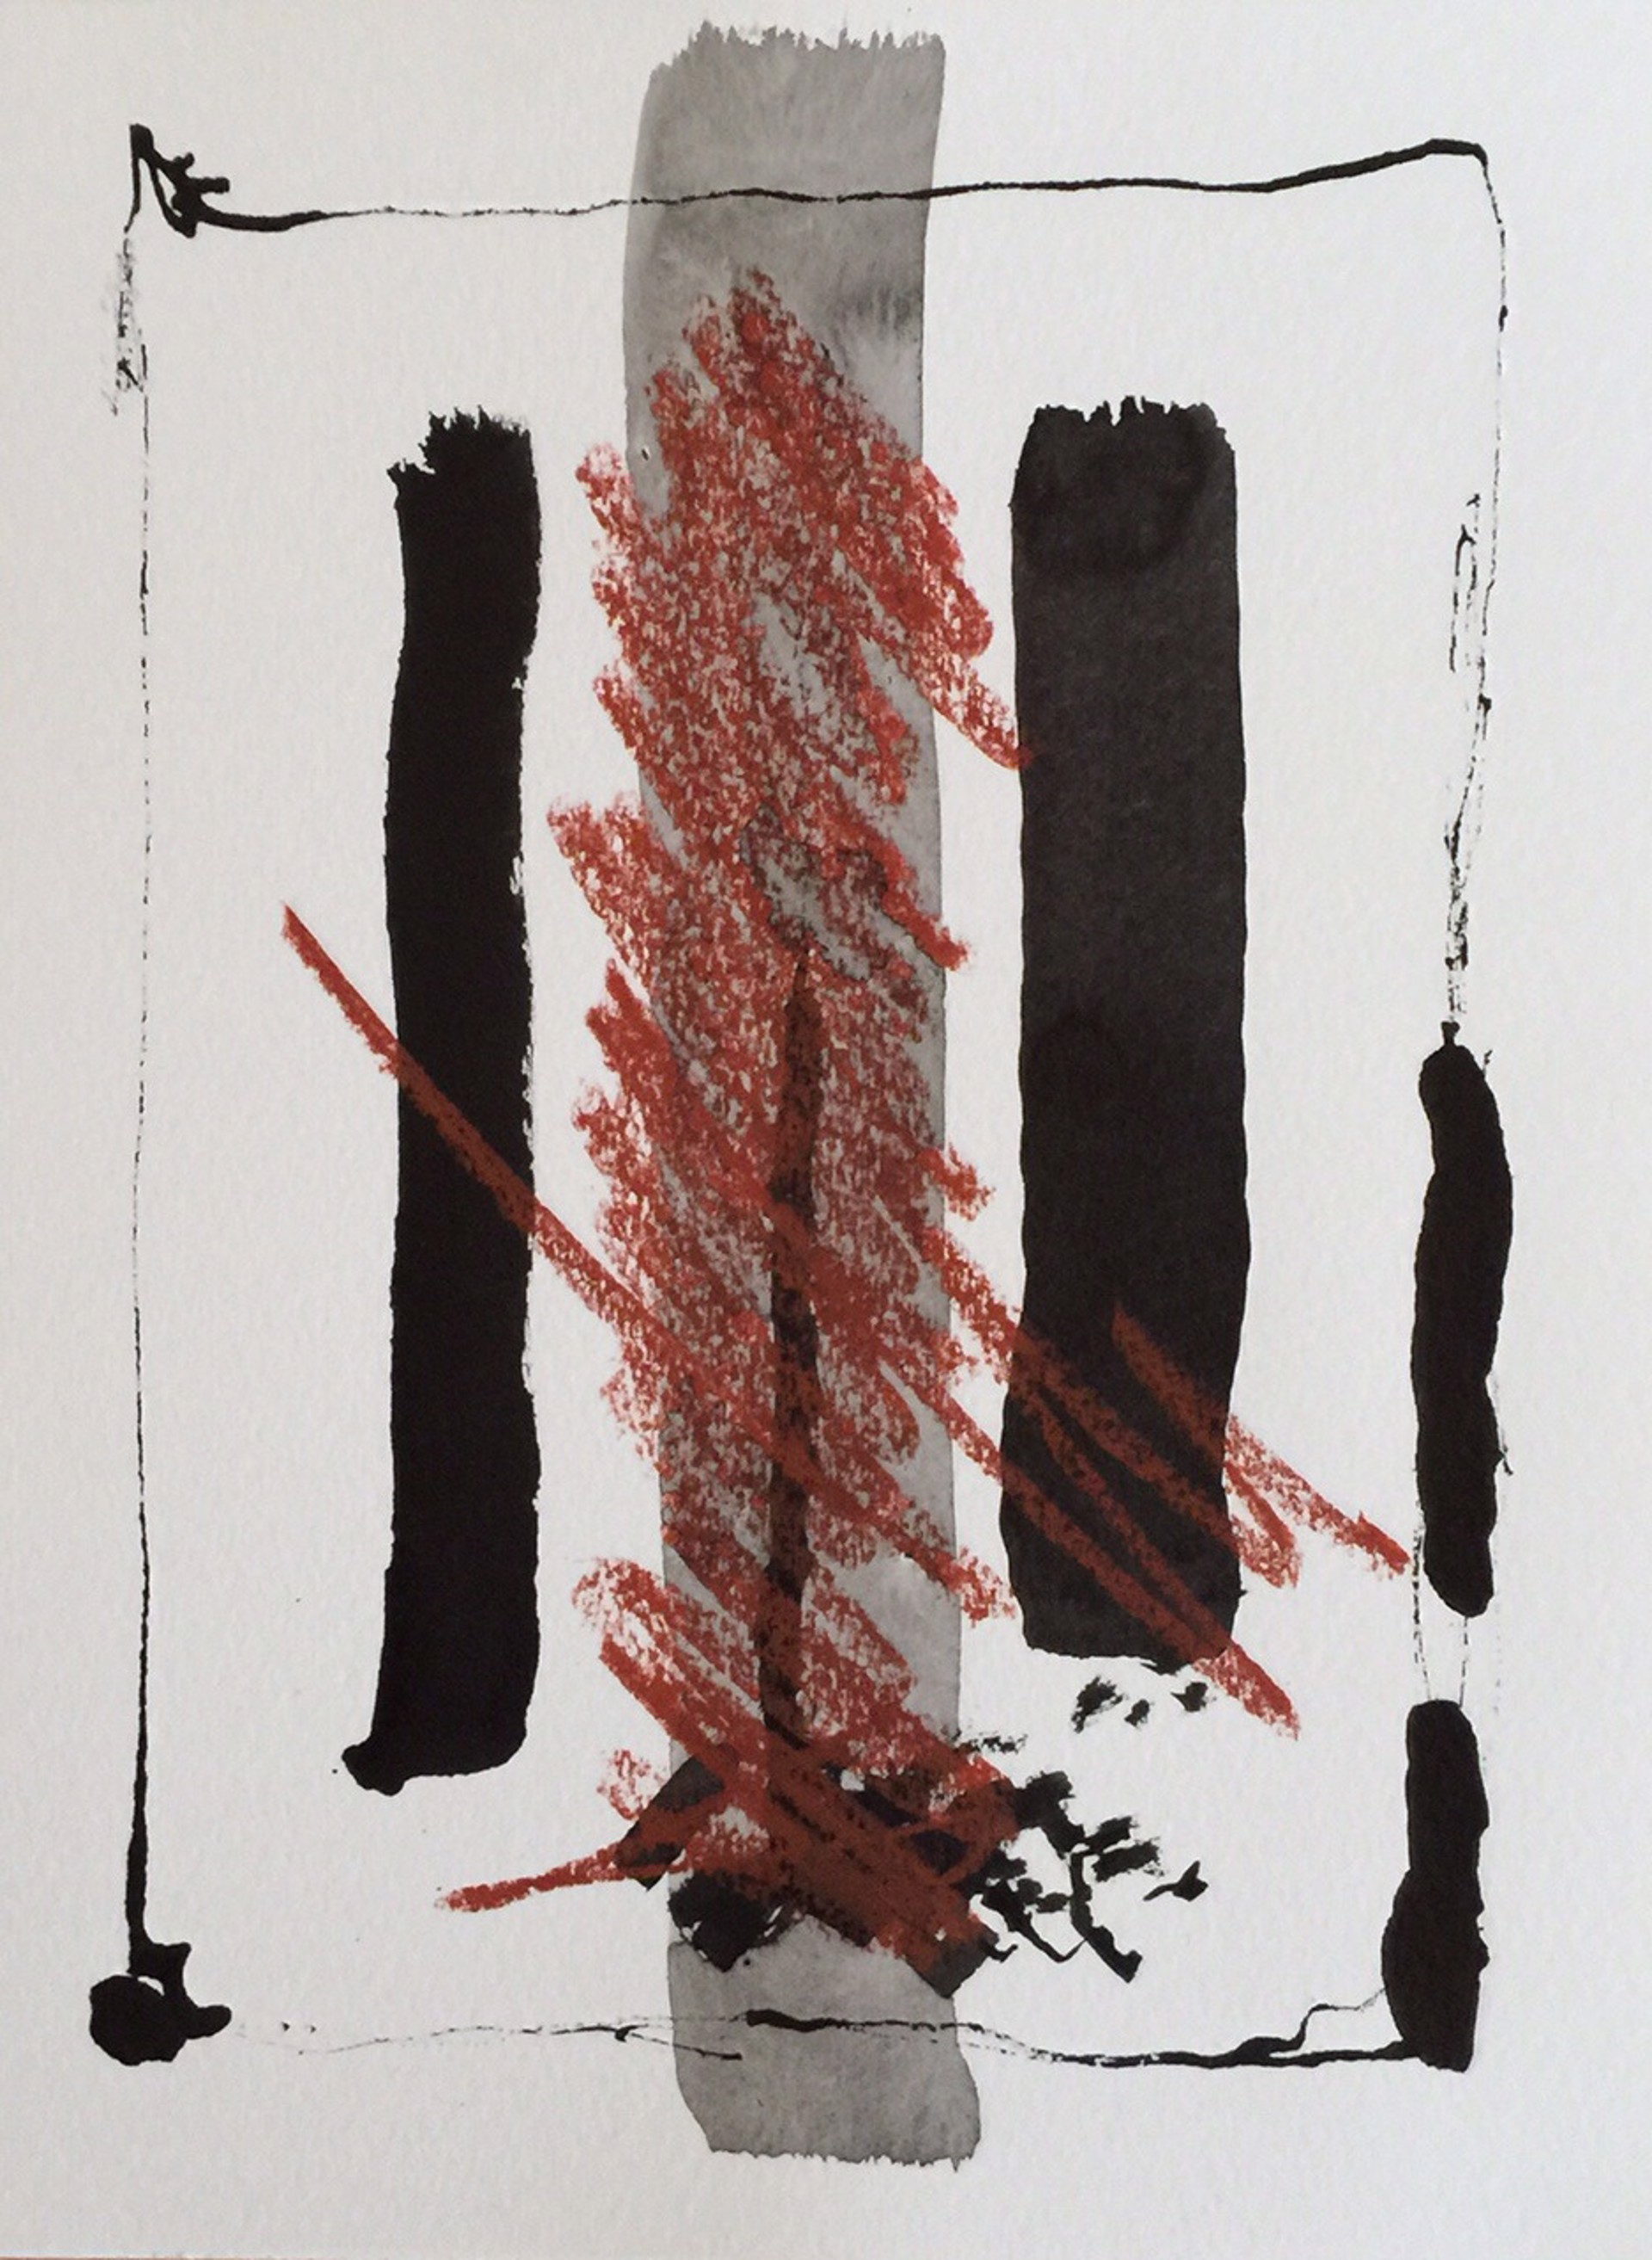 Abstract no. 5, 2015 by John Goodman